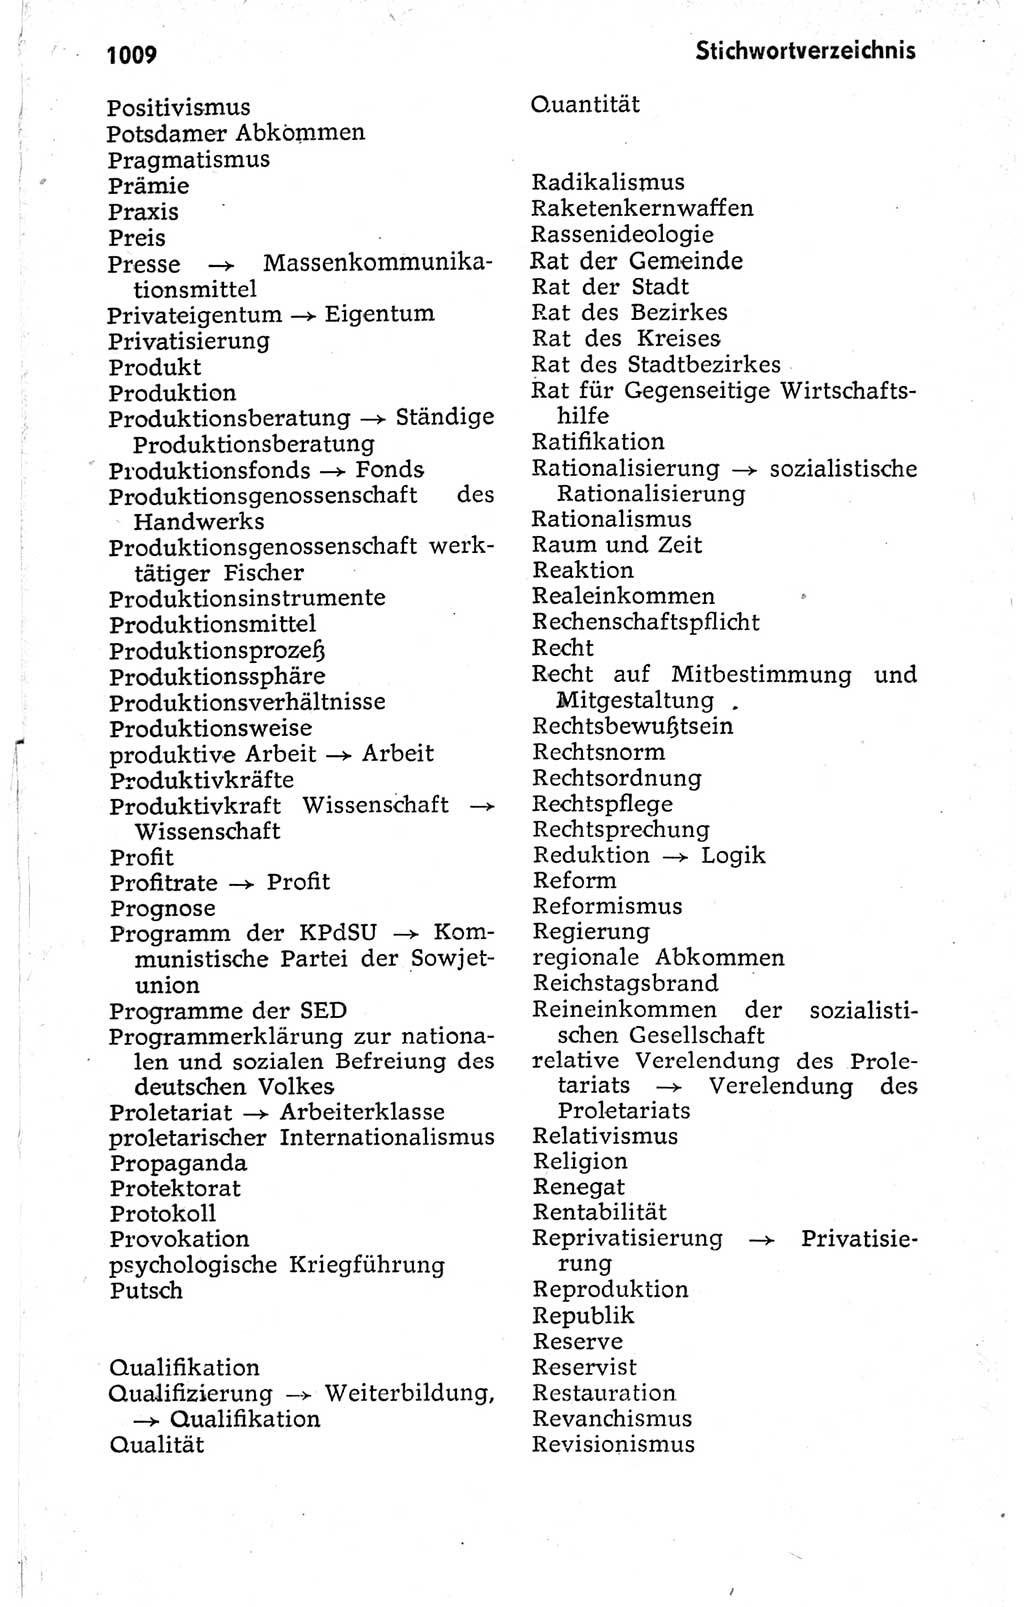 Kleines politisches Wörterbuch [Deutsche Demokratische Republik (DDR)] 1973, Seite 1009 (Kl. pol. Wb. DDR 1973, S. 1009)